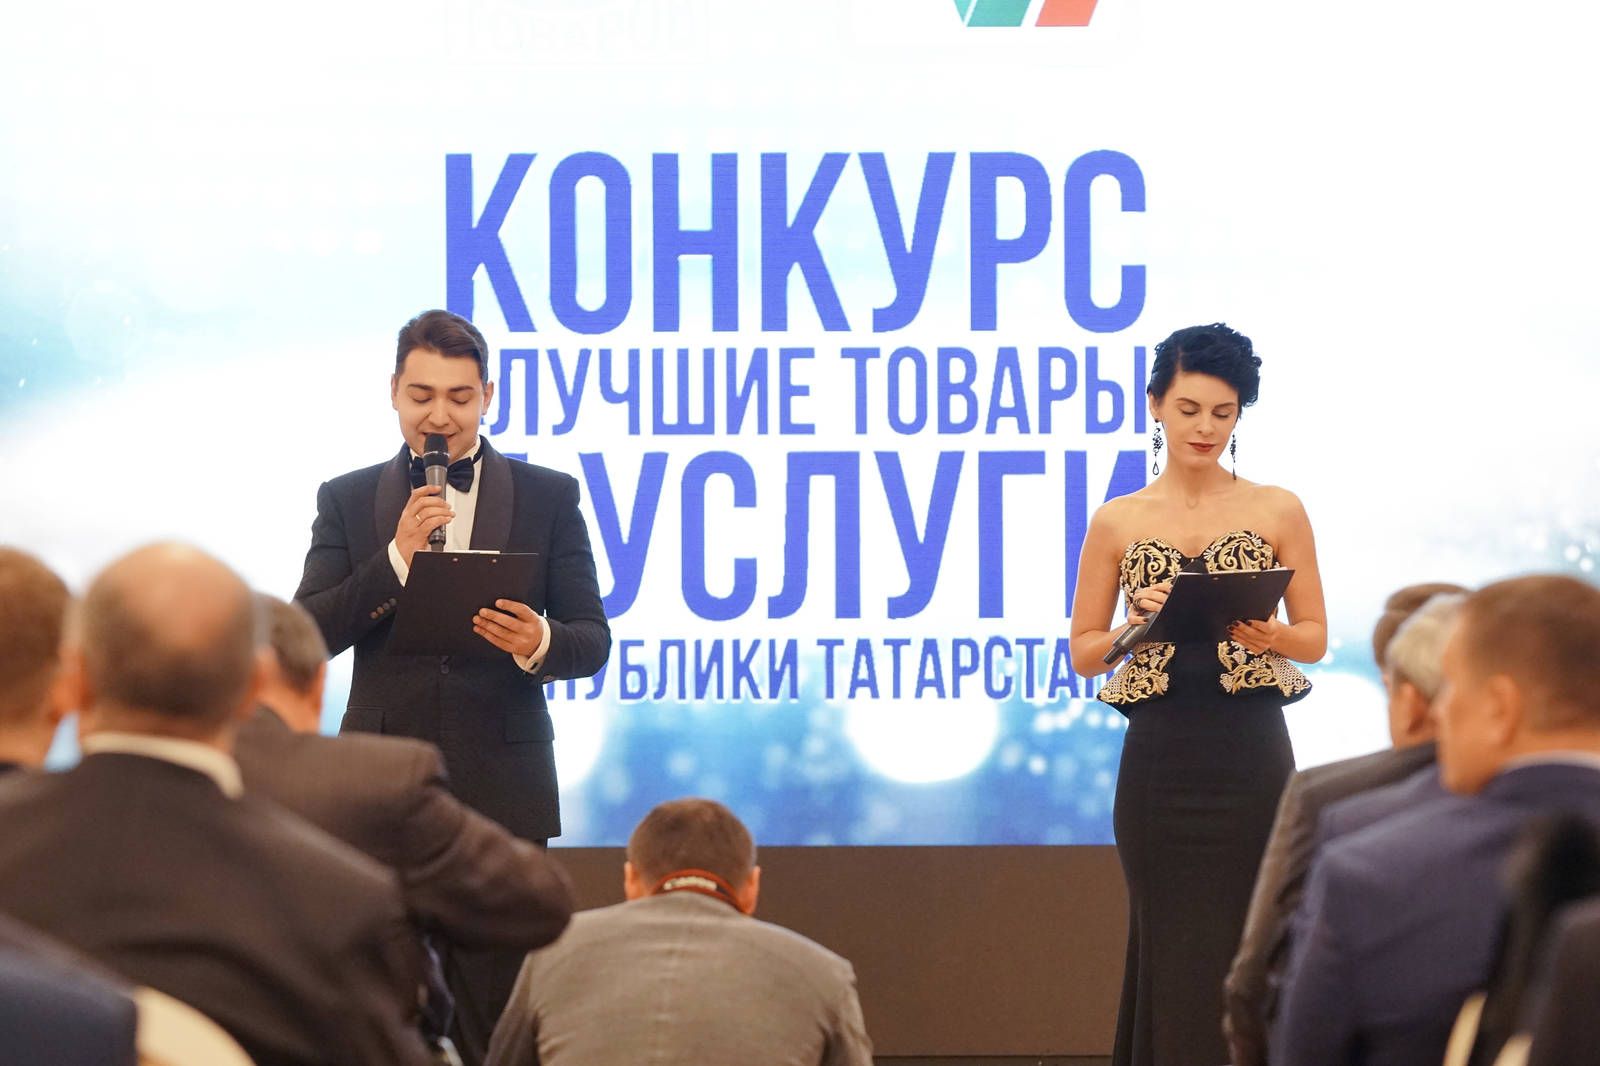 В Татарстане определили лучшие товары и услуги 2017 года